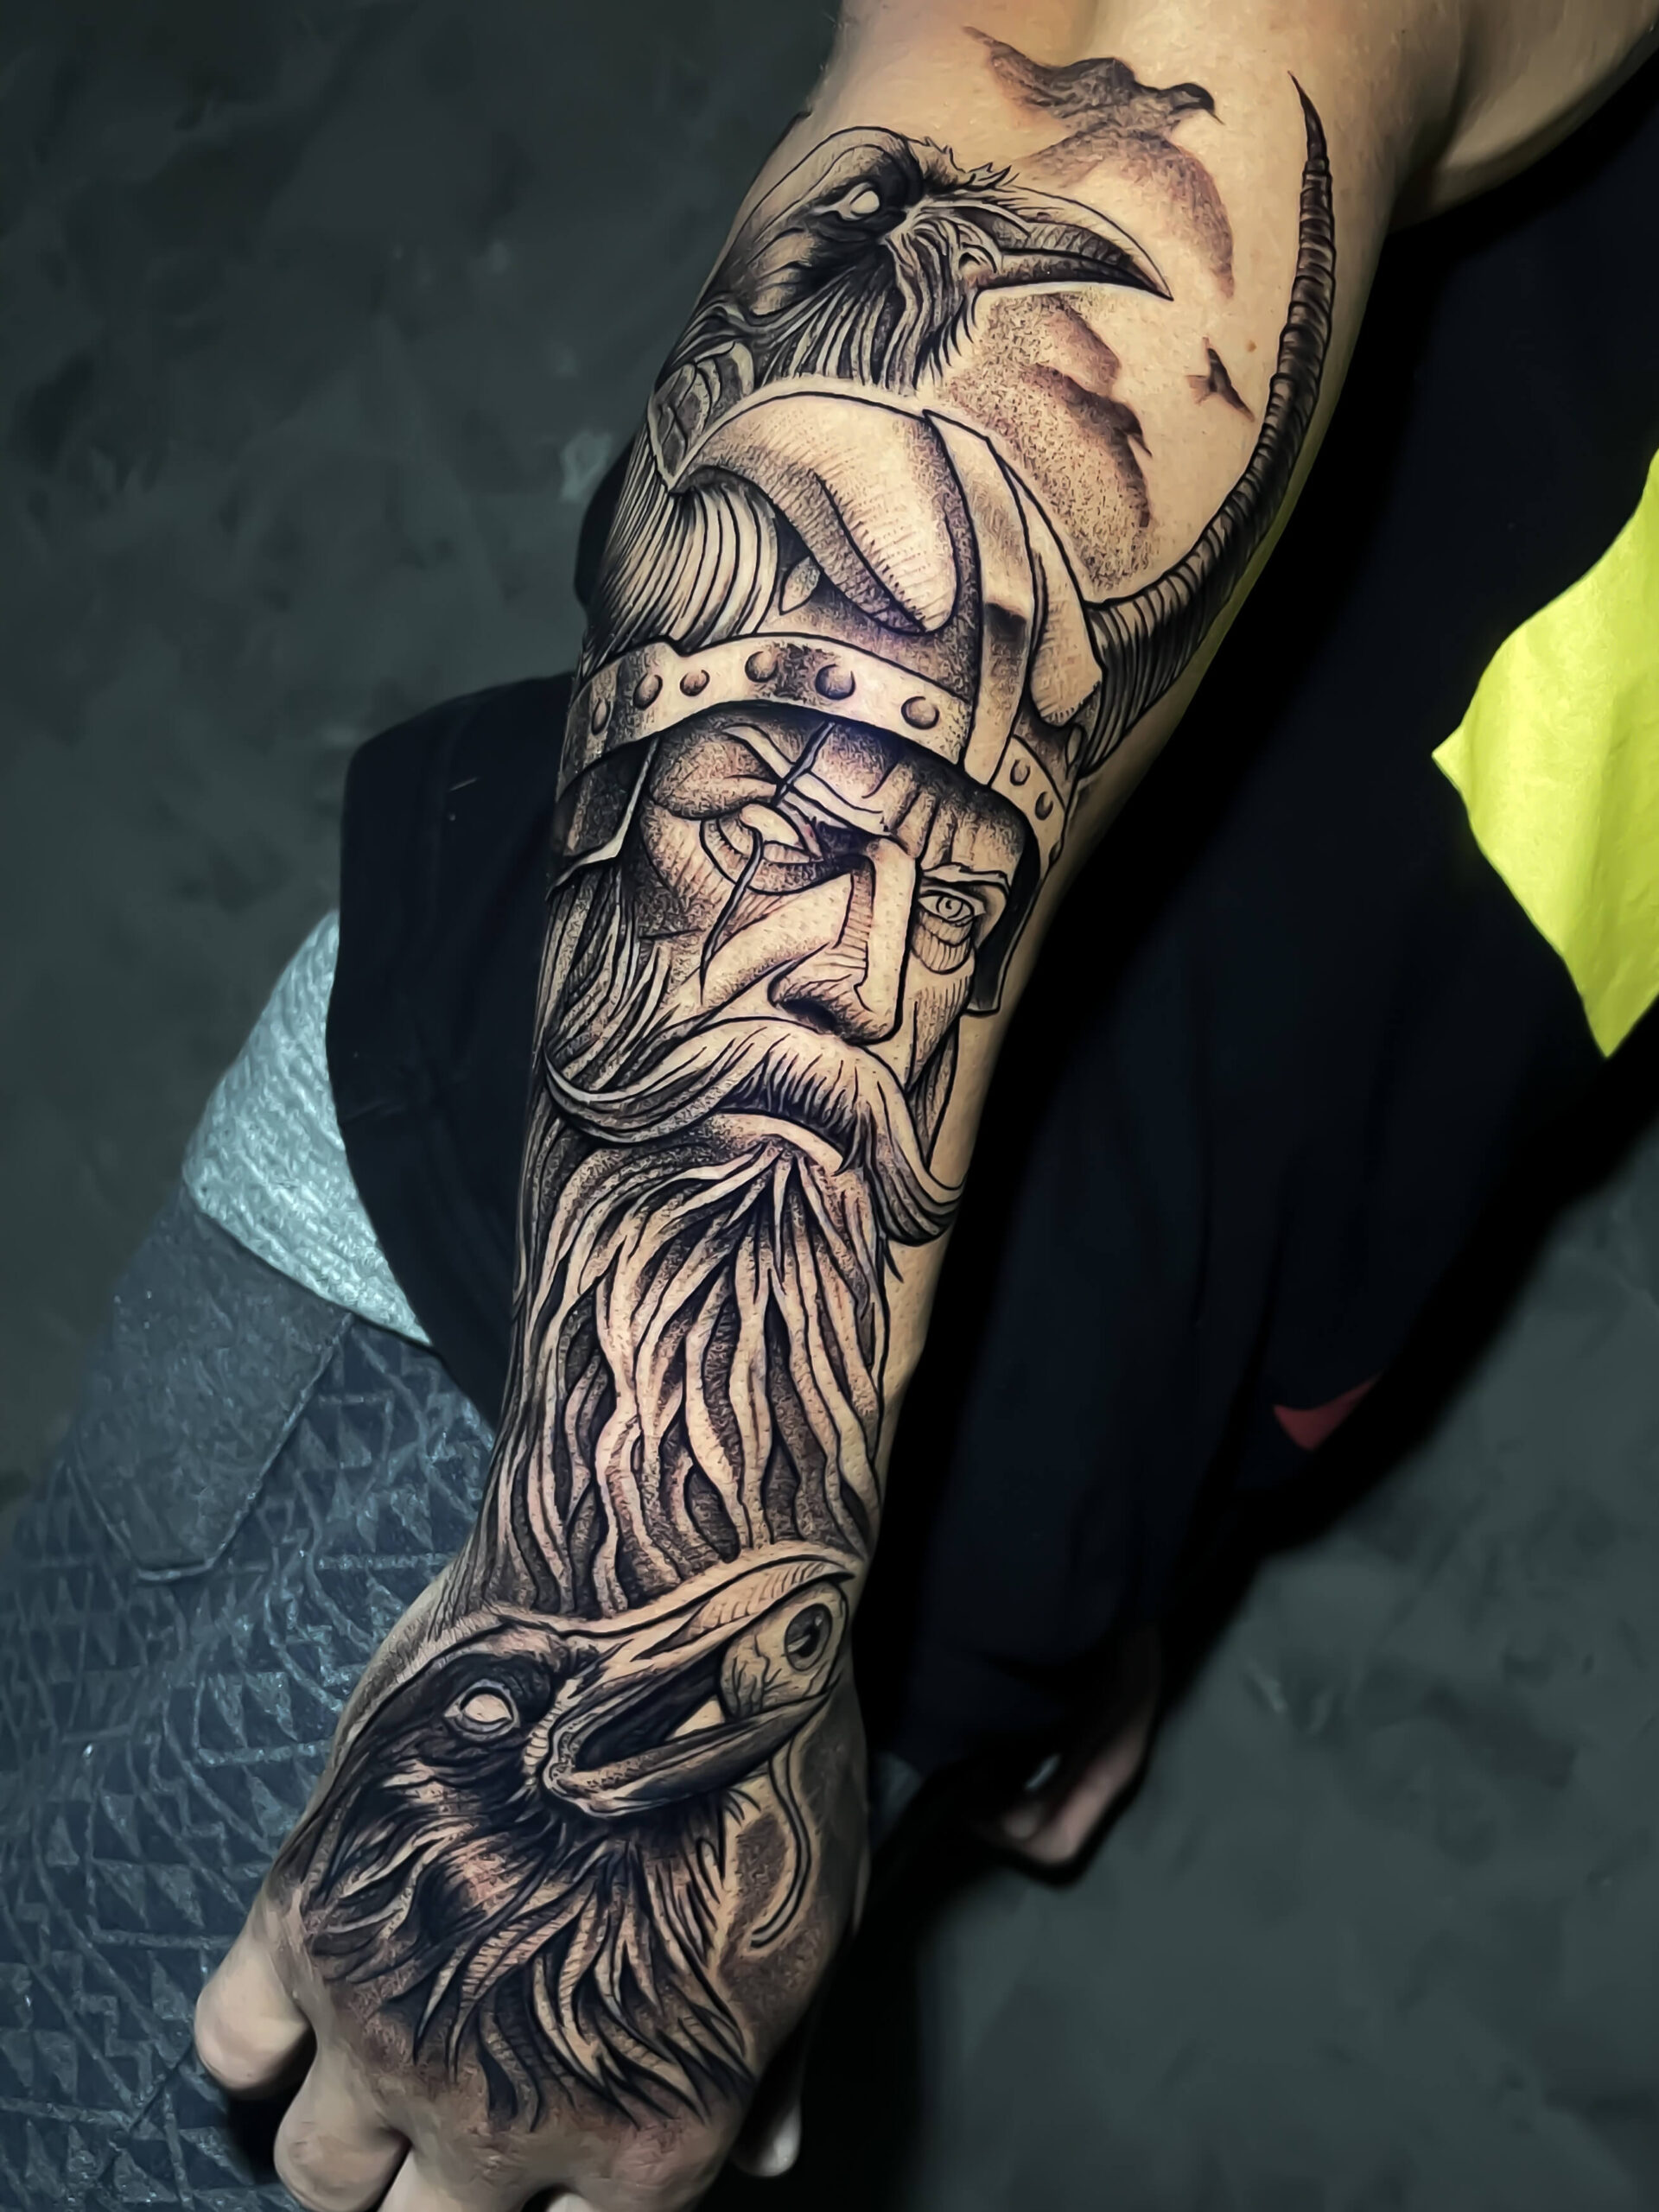 Thiago Tattoo on Instagram: Odin tattoo